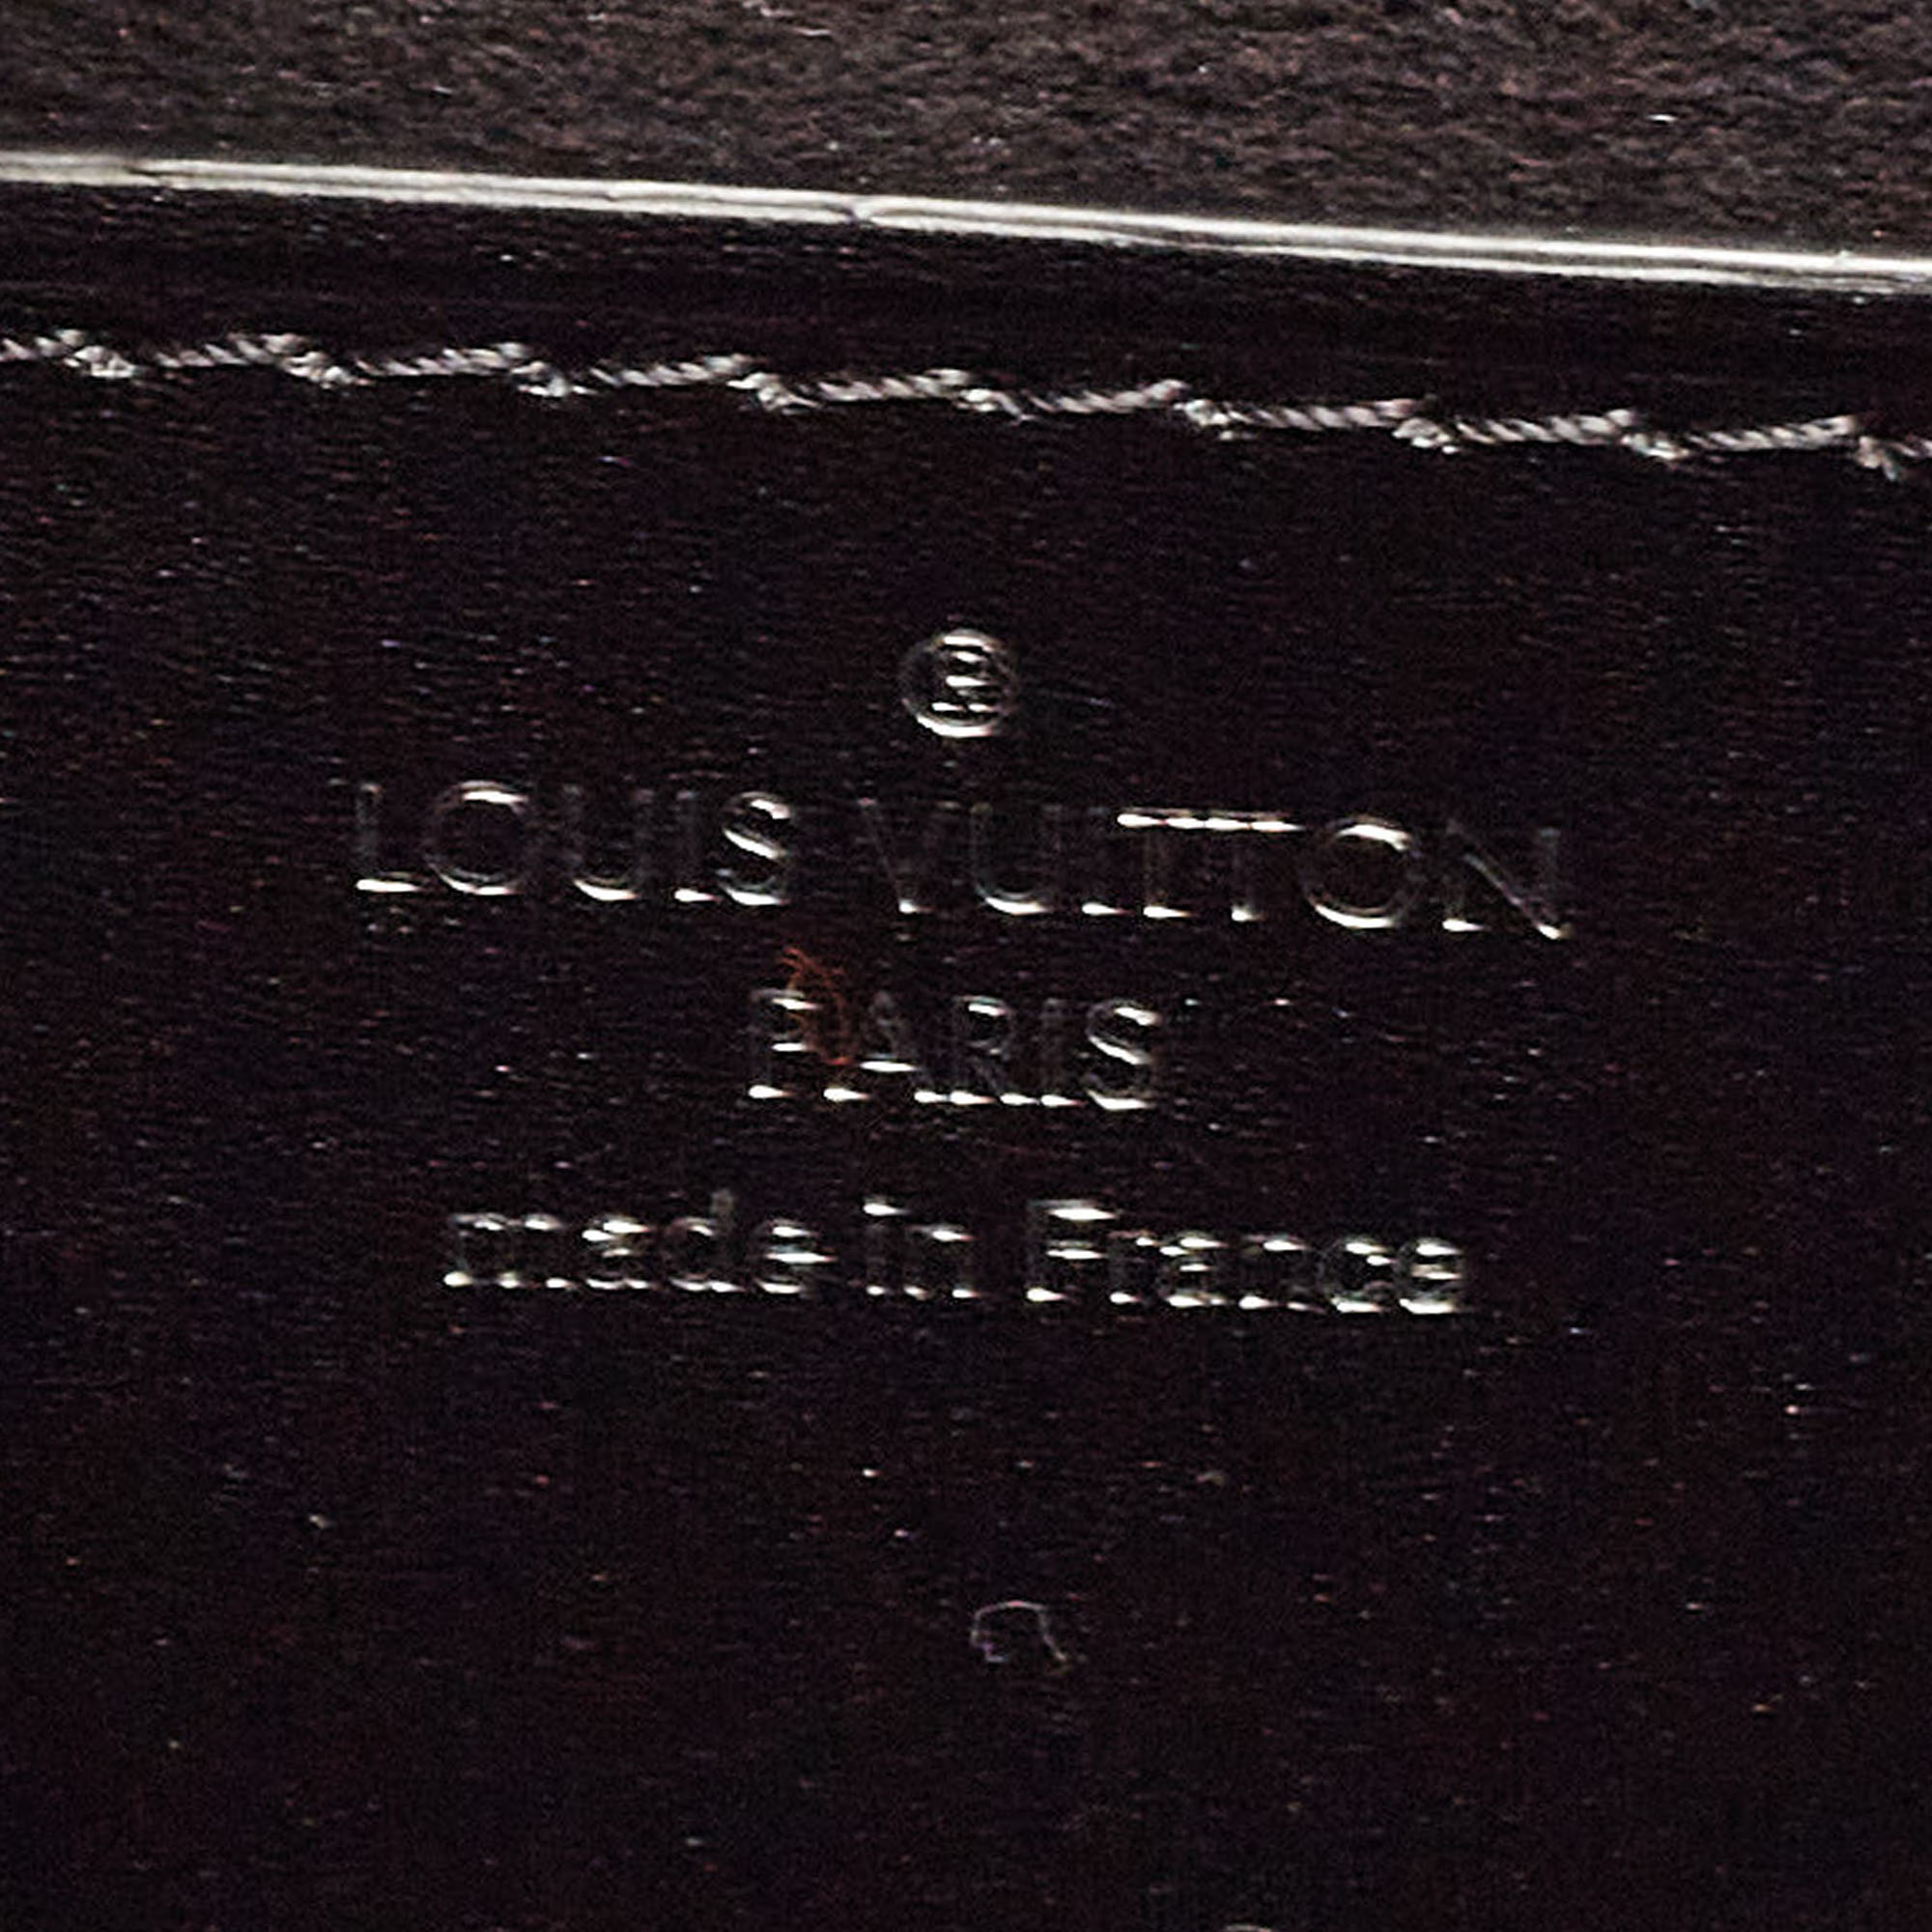 Louis Vuitton Black/White Malletage Epi Leather Twist PM Bag